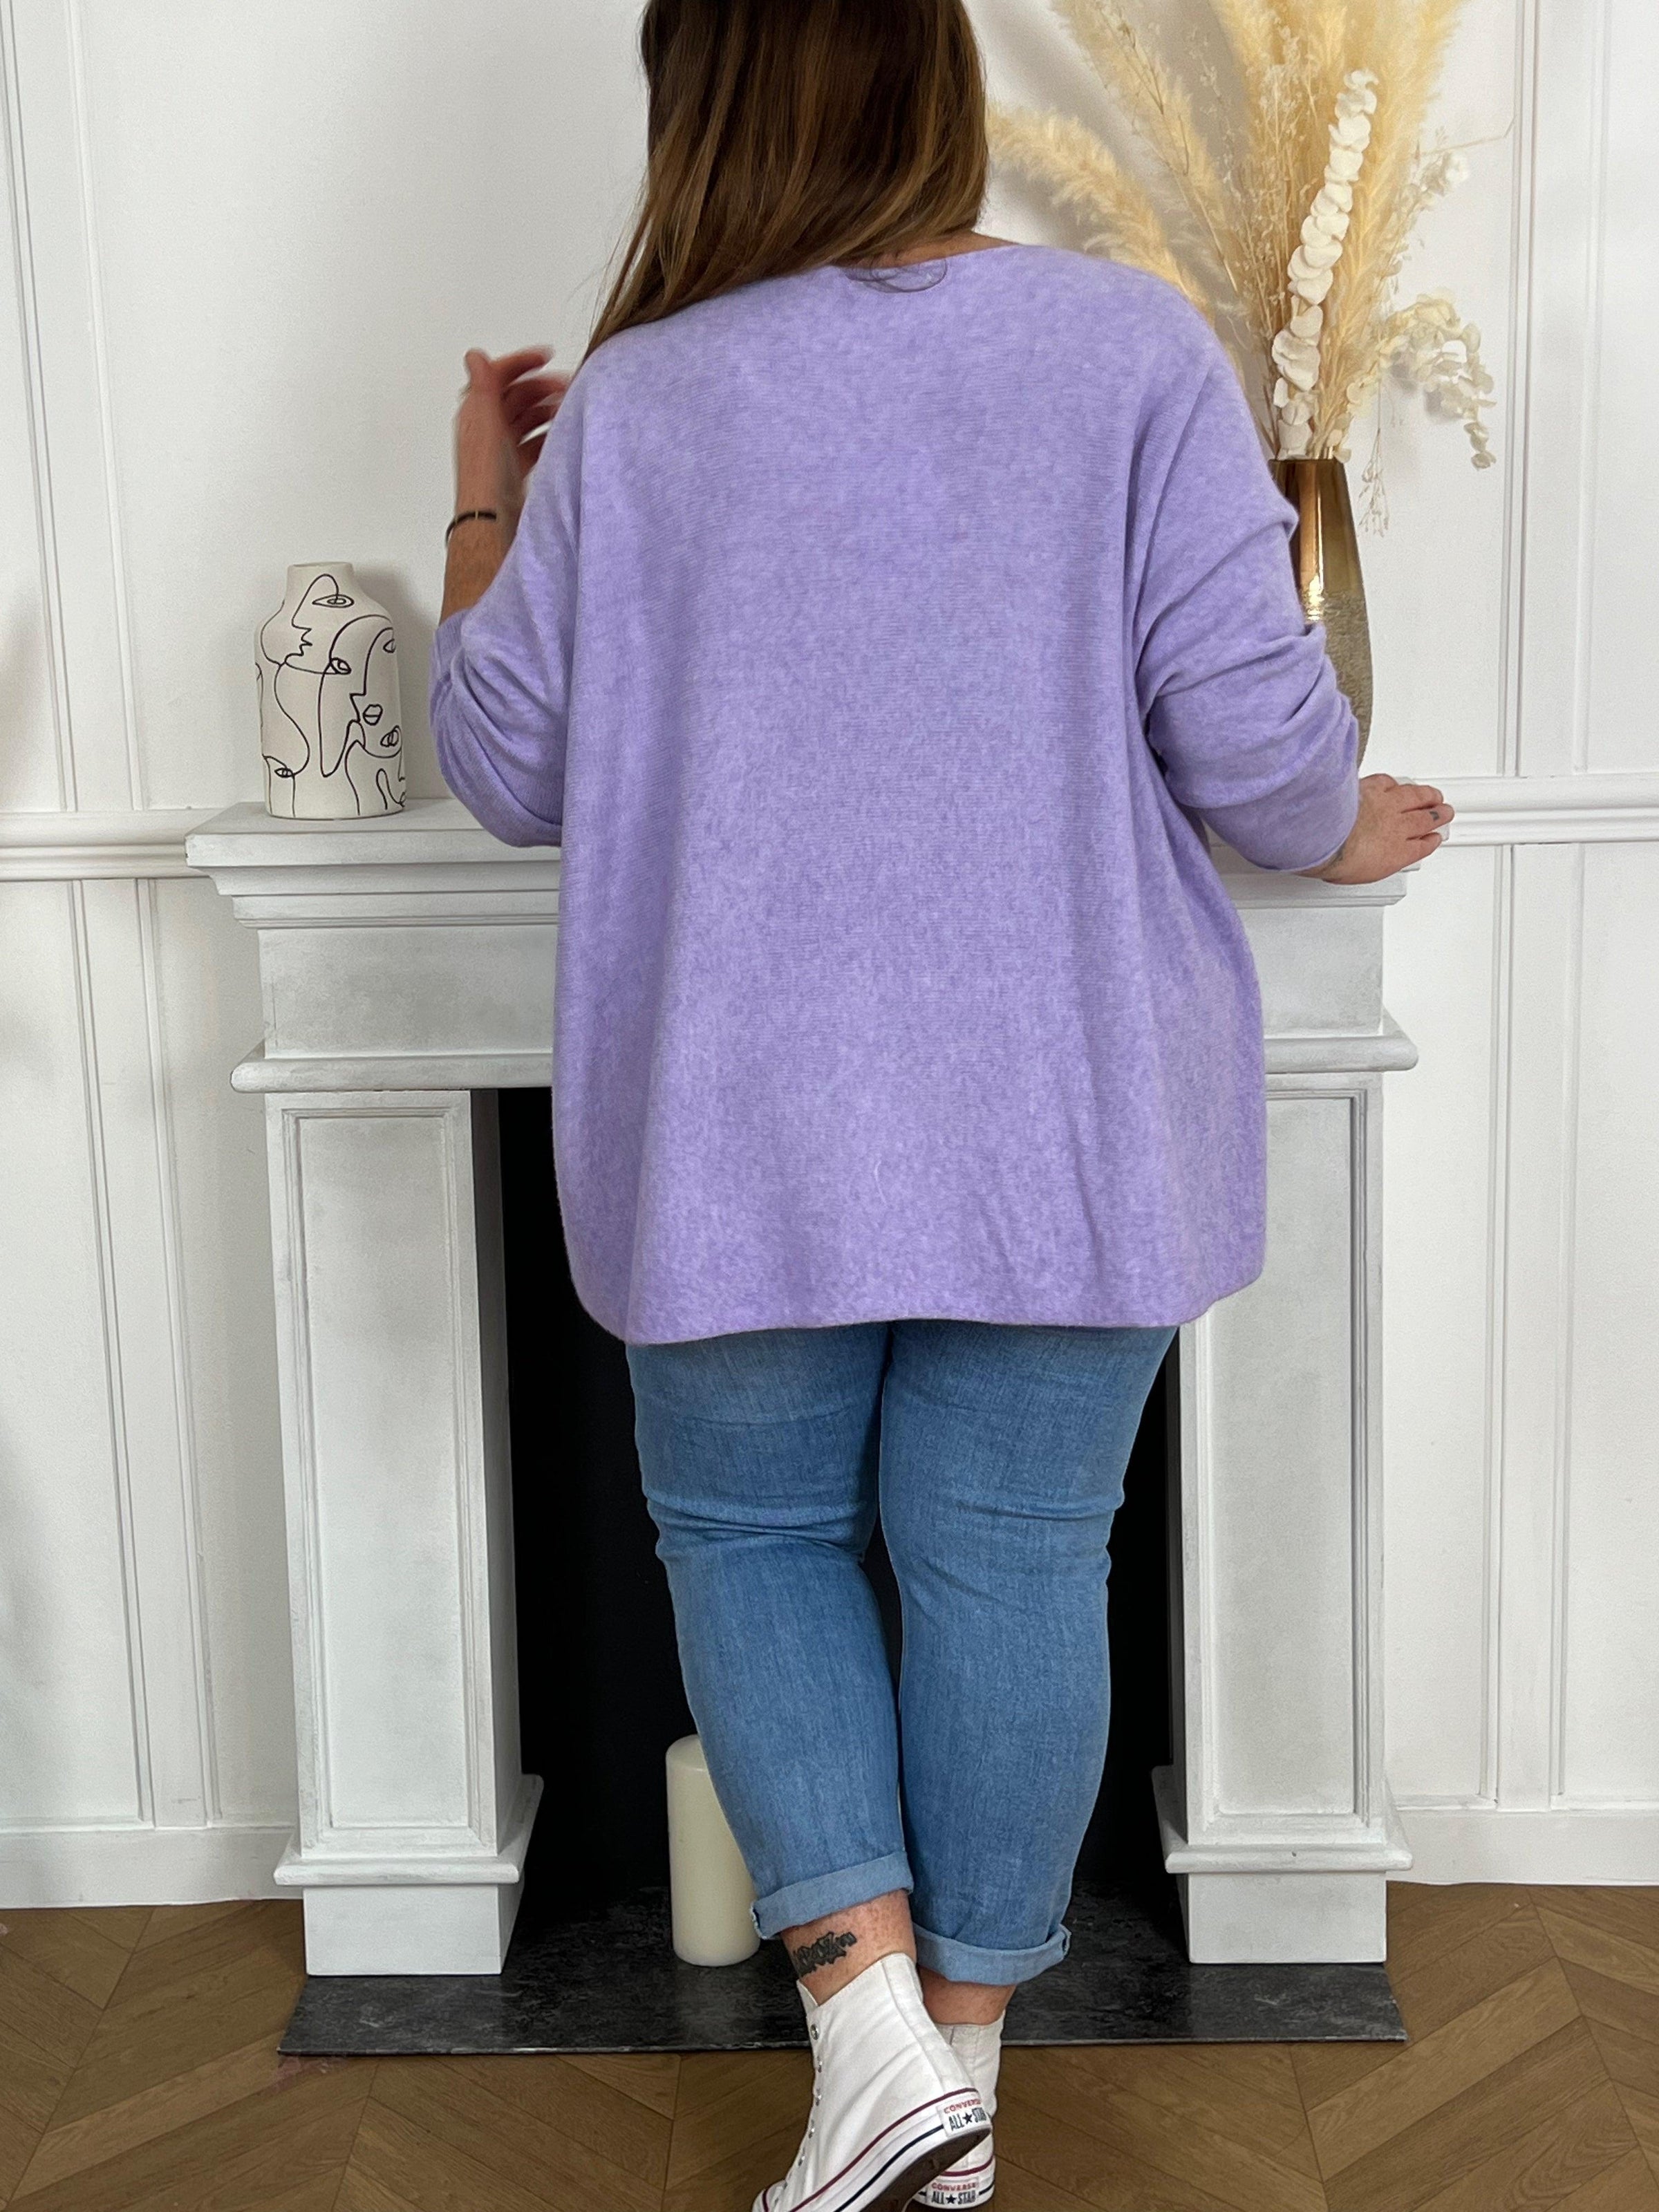 Le pull lilas grande taille est une pièce incontournable de la garde-robe féminine. Il est à la fois élégant, confortable et polyvalent. Il peut être porté pour toutes les occasions, du quotidien au travail en passant par les occasions spéciales.